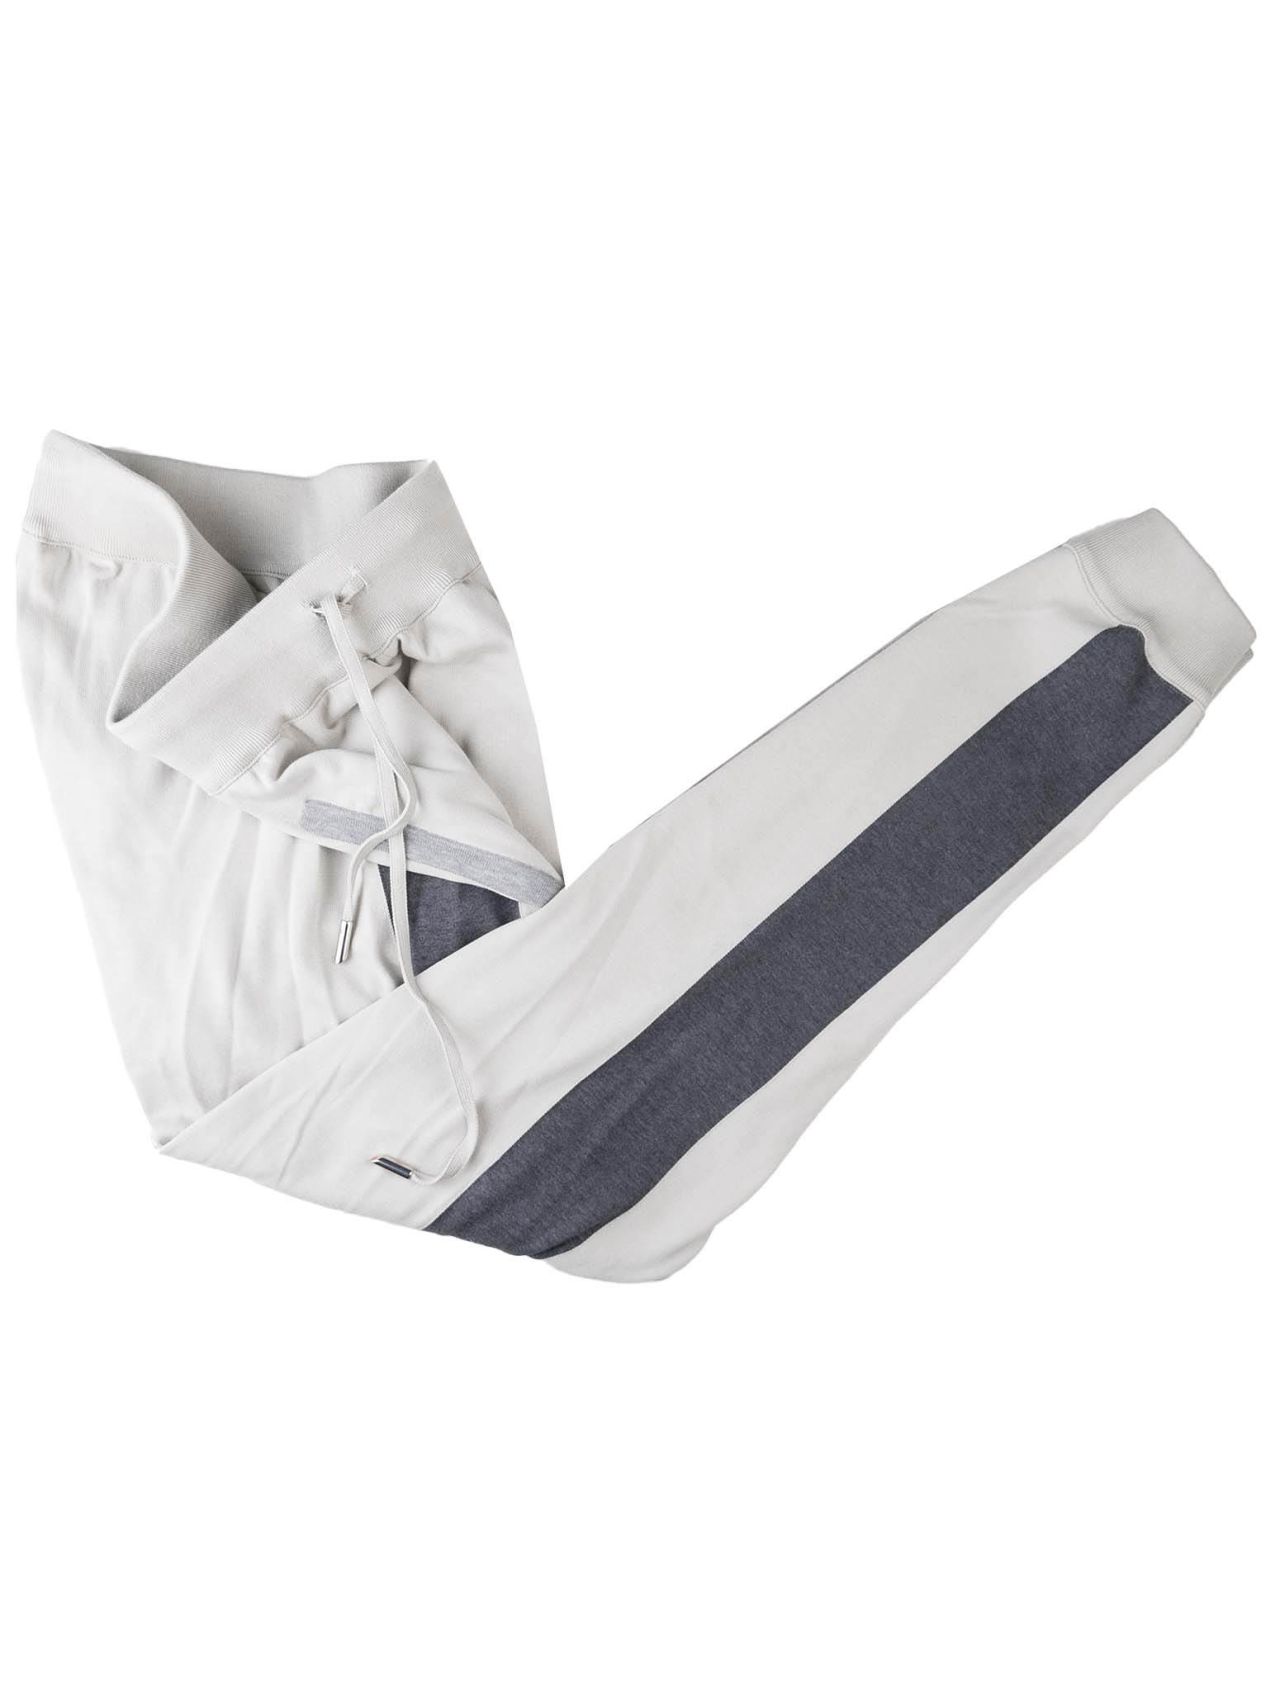 Dark Grey Color Cotton Trouser Pants for Men – Punekar Cotton